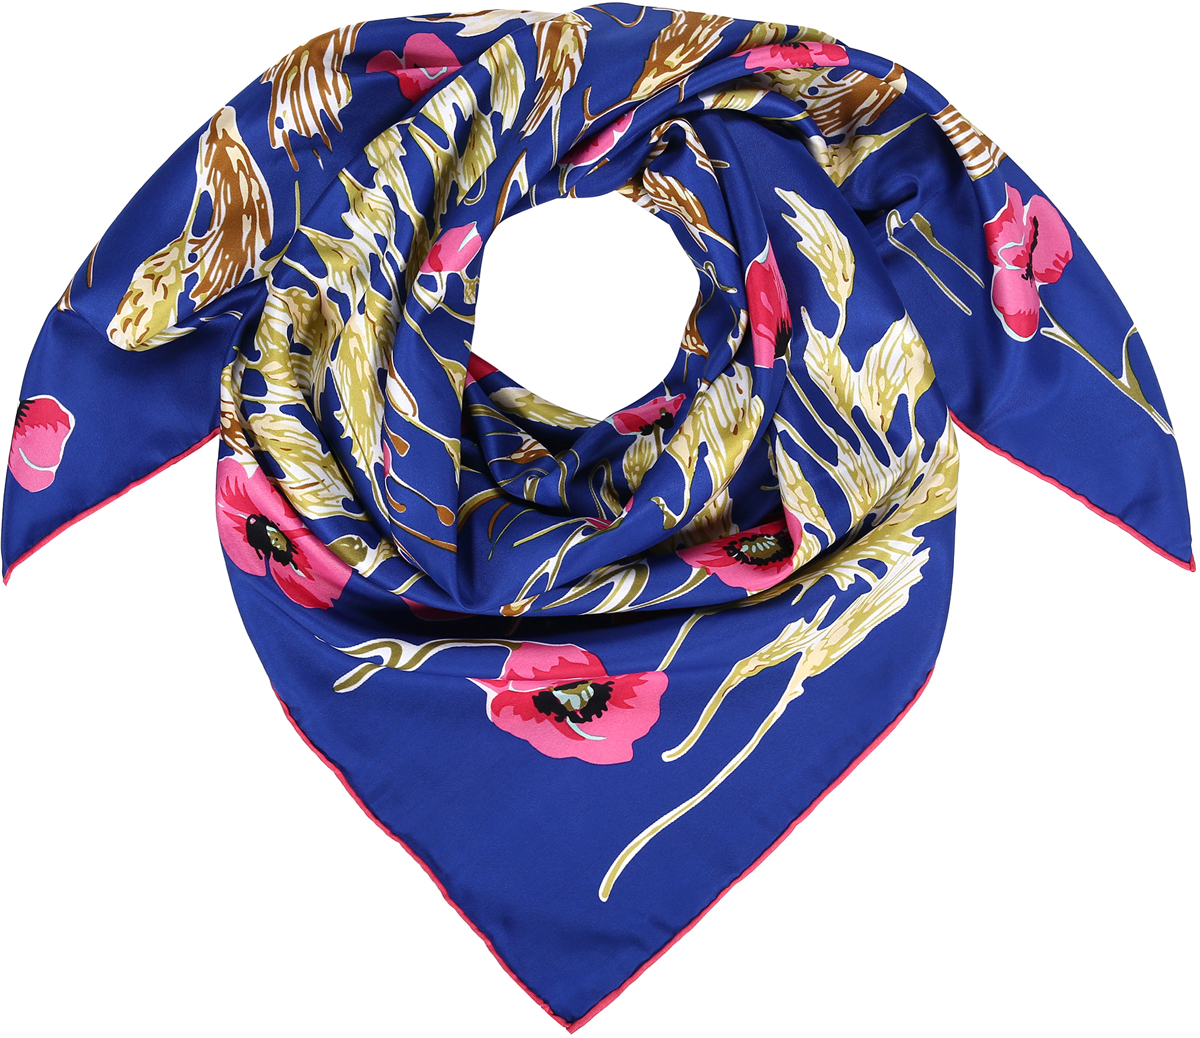 Платок женский Модные истории, цвет: синий, розовый, желтый. 23/0548/180. Размер 90 см х 90 см